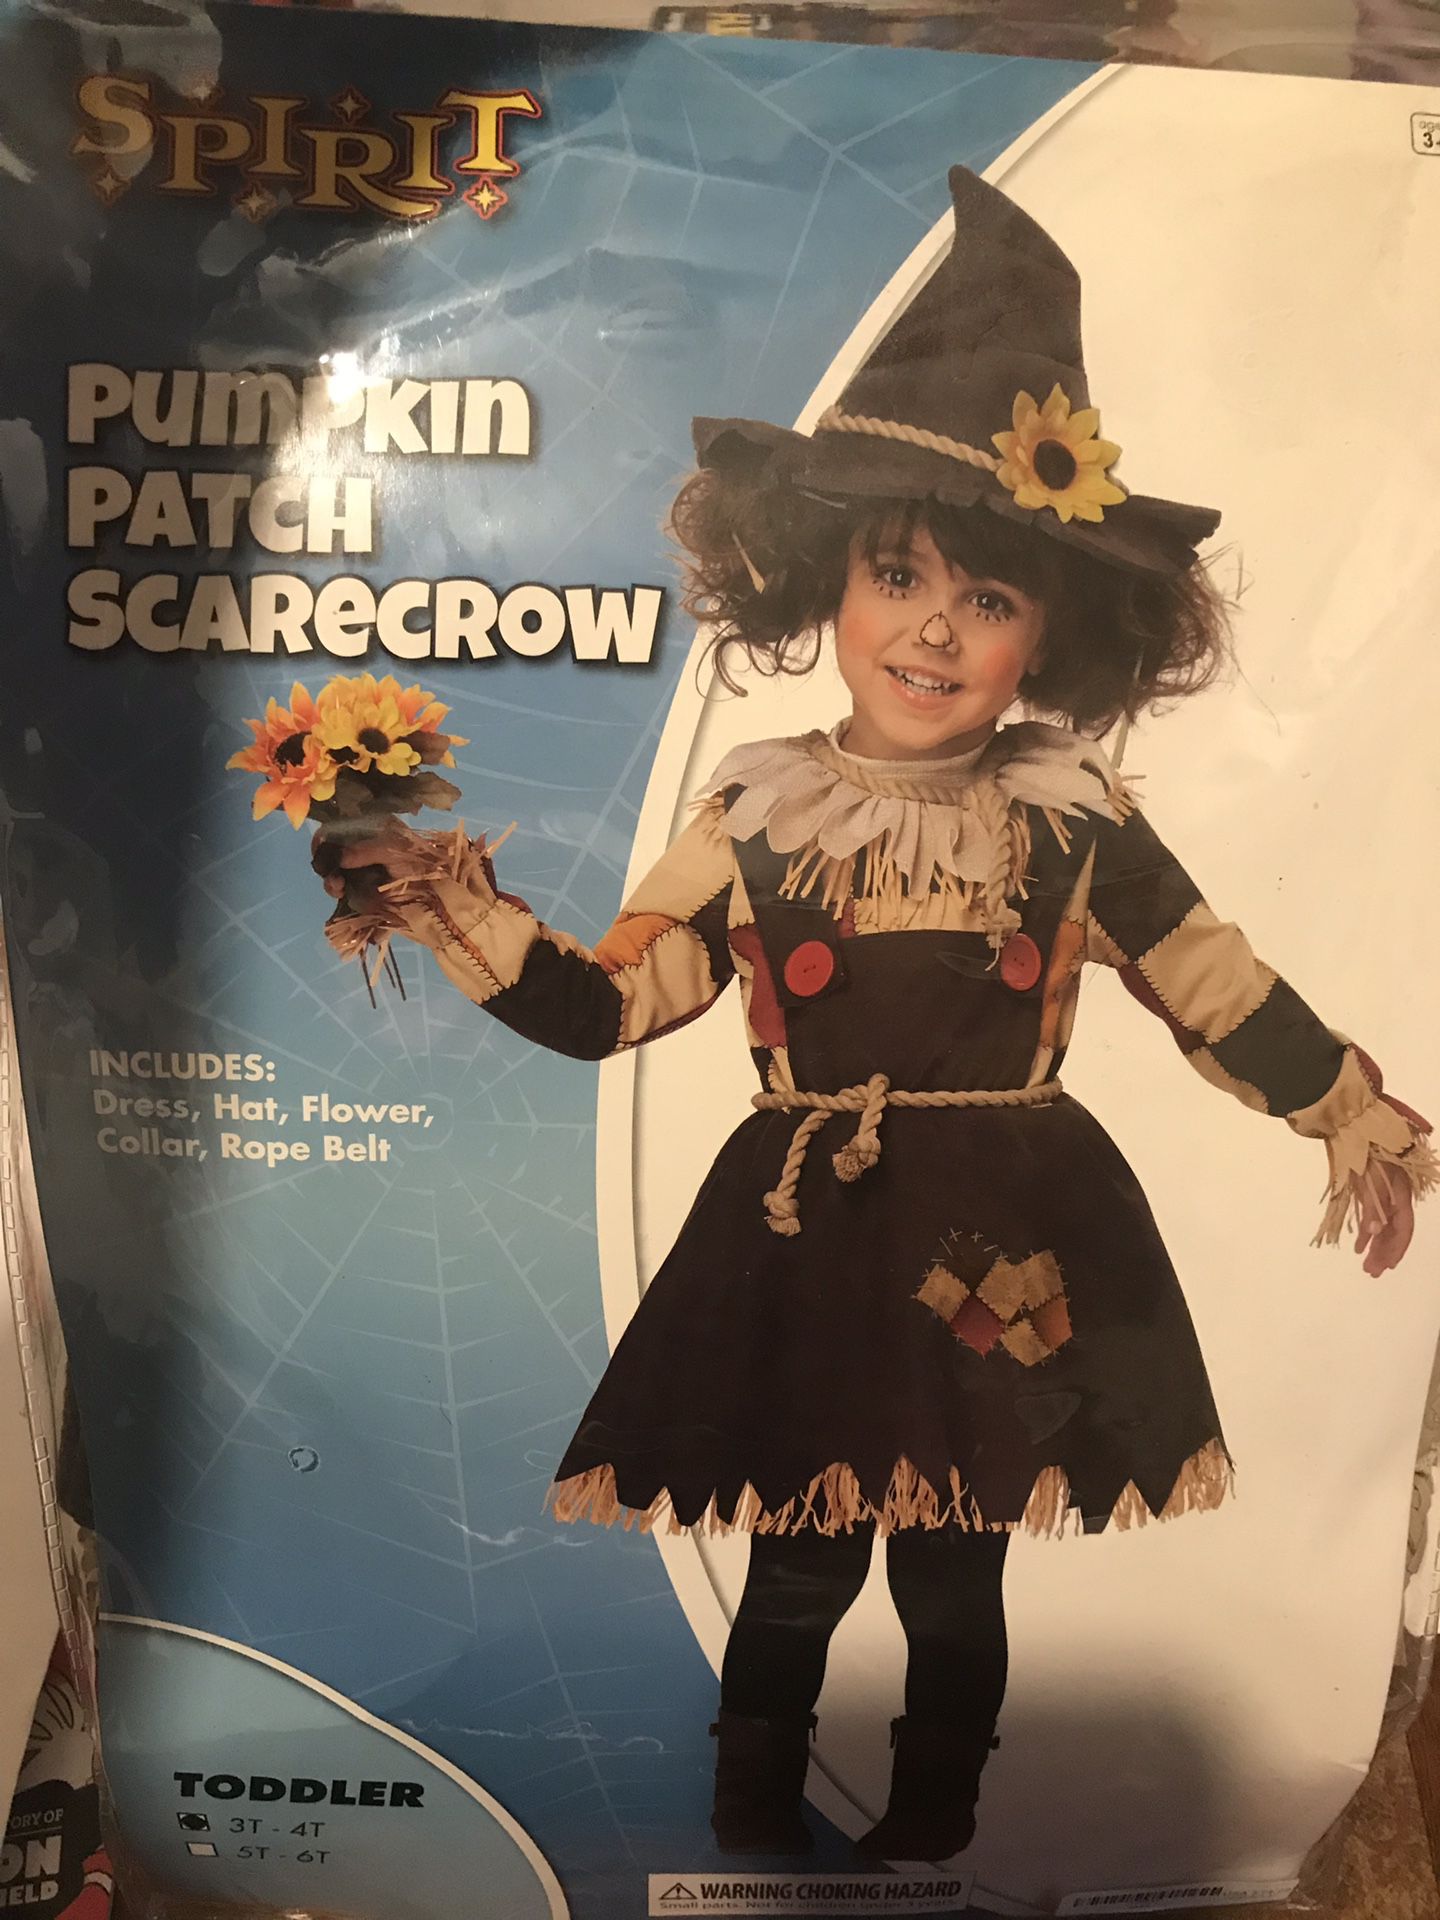 Pumpkin patch scarecrow costume